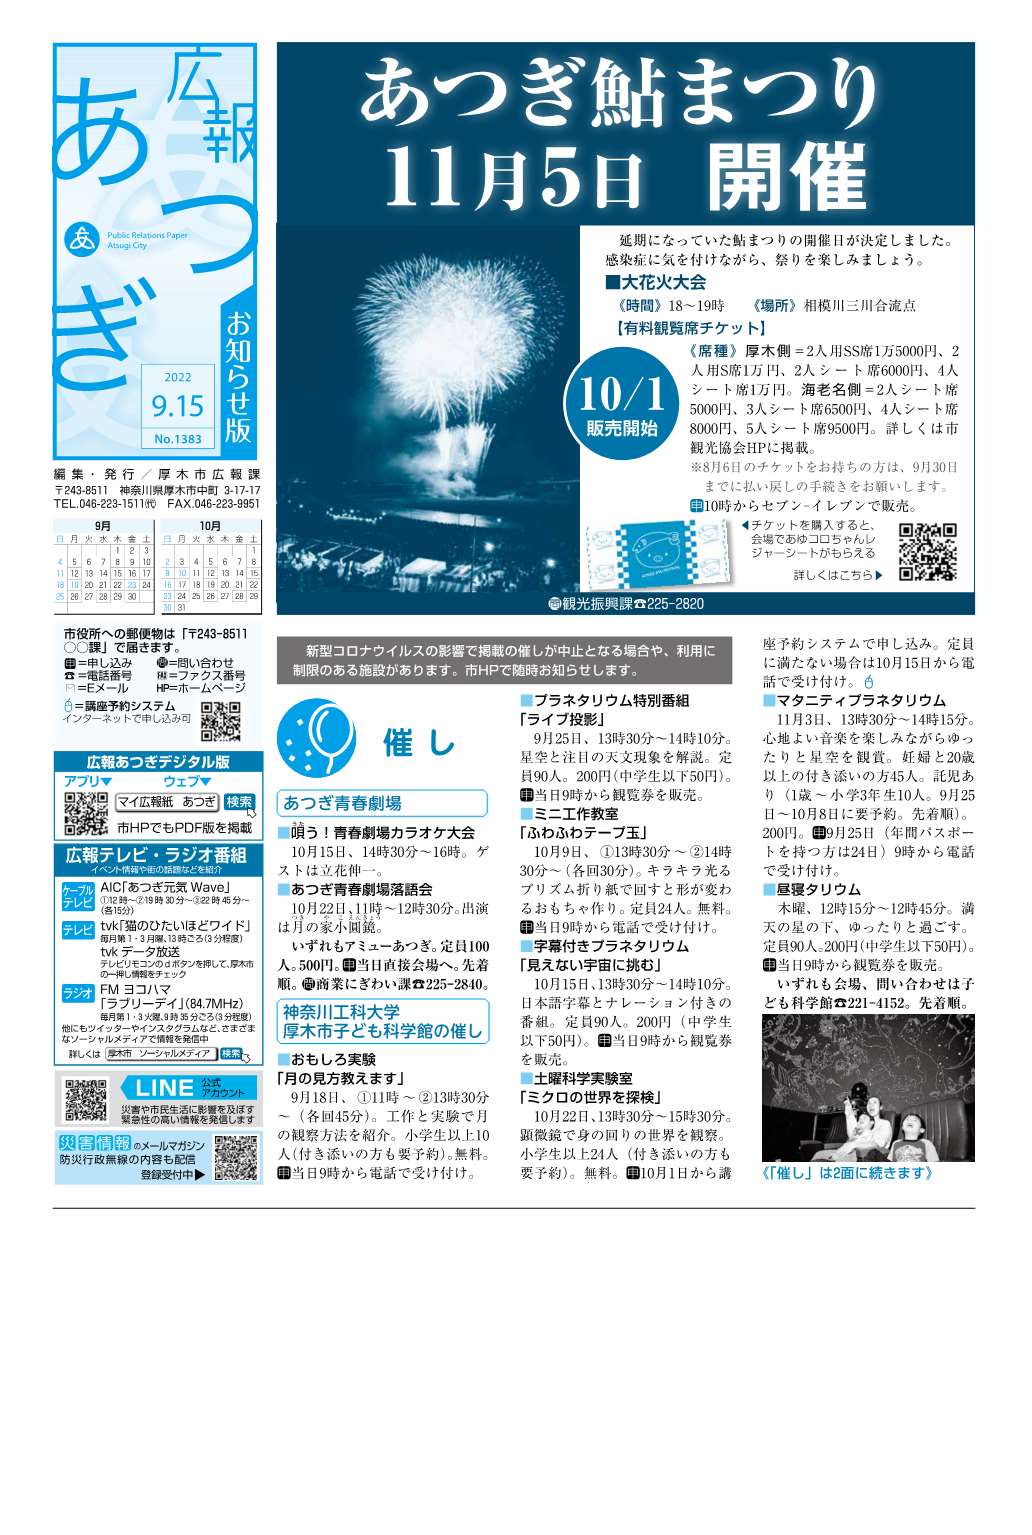 広報あつぎ9月15日号の1面のイメージ画像